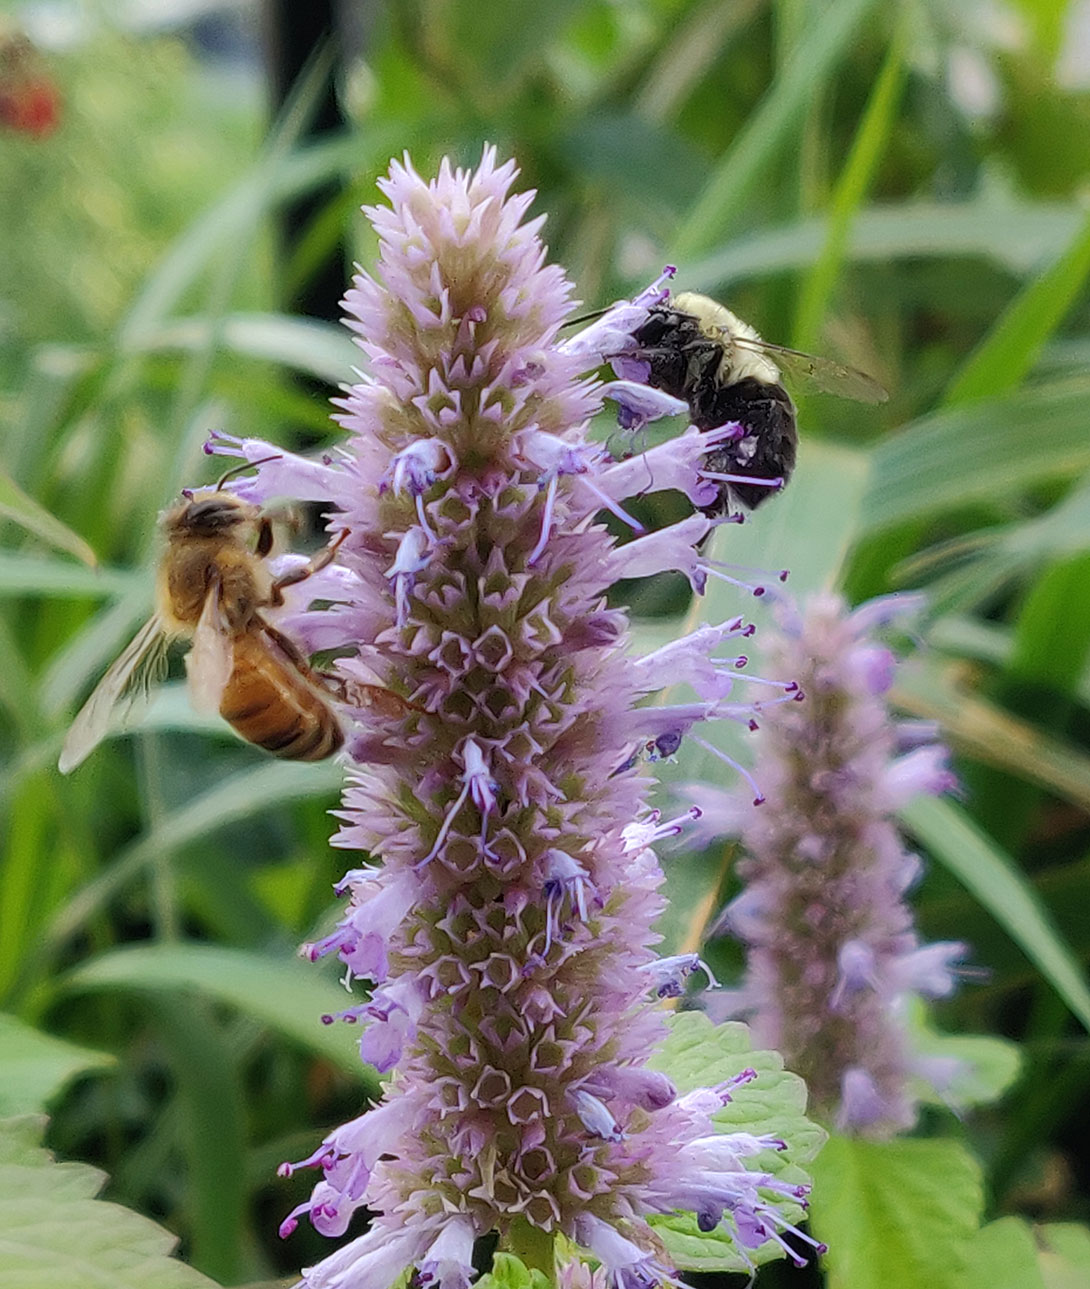 Bumblebee and honeybee on Purple Giant Hyssop © Ryan Godfrey / WWF-Canada